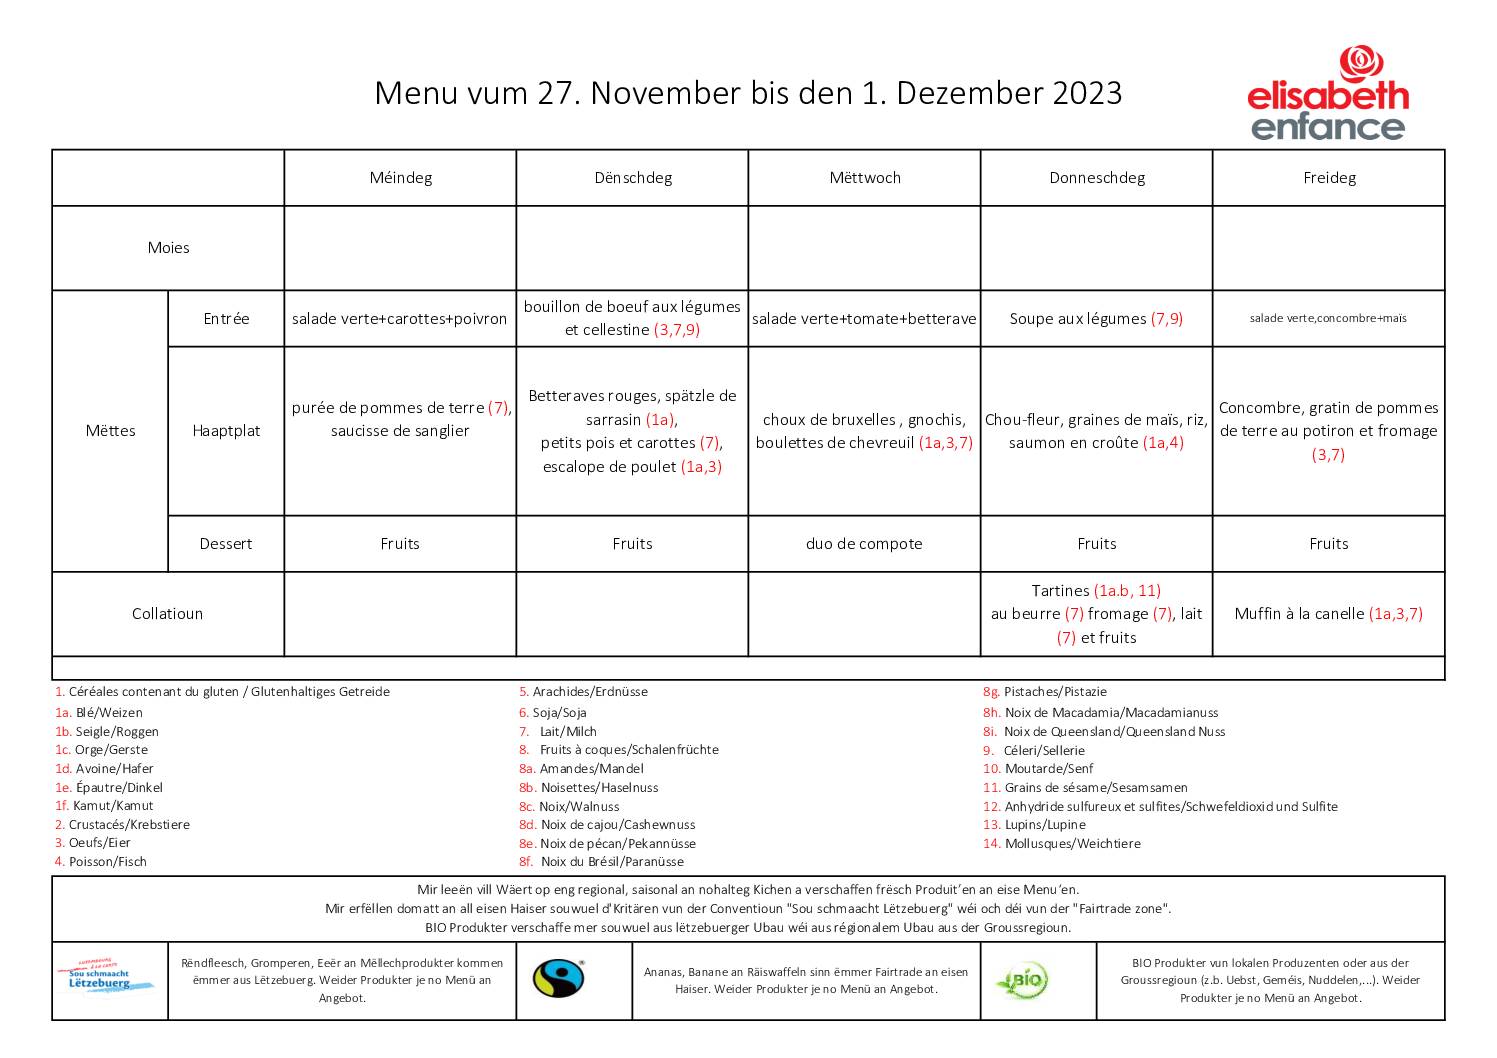 menus de la semaine du 27 novembre au 1 décembre 2023